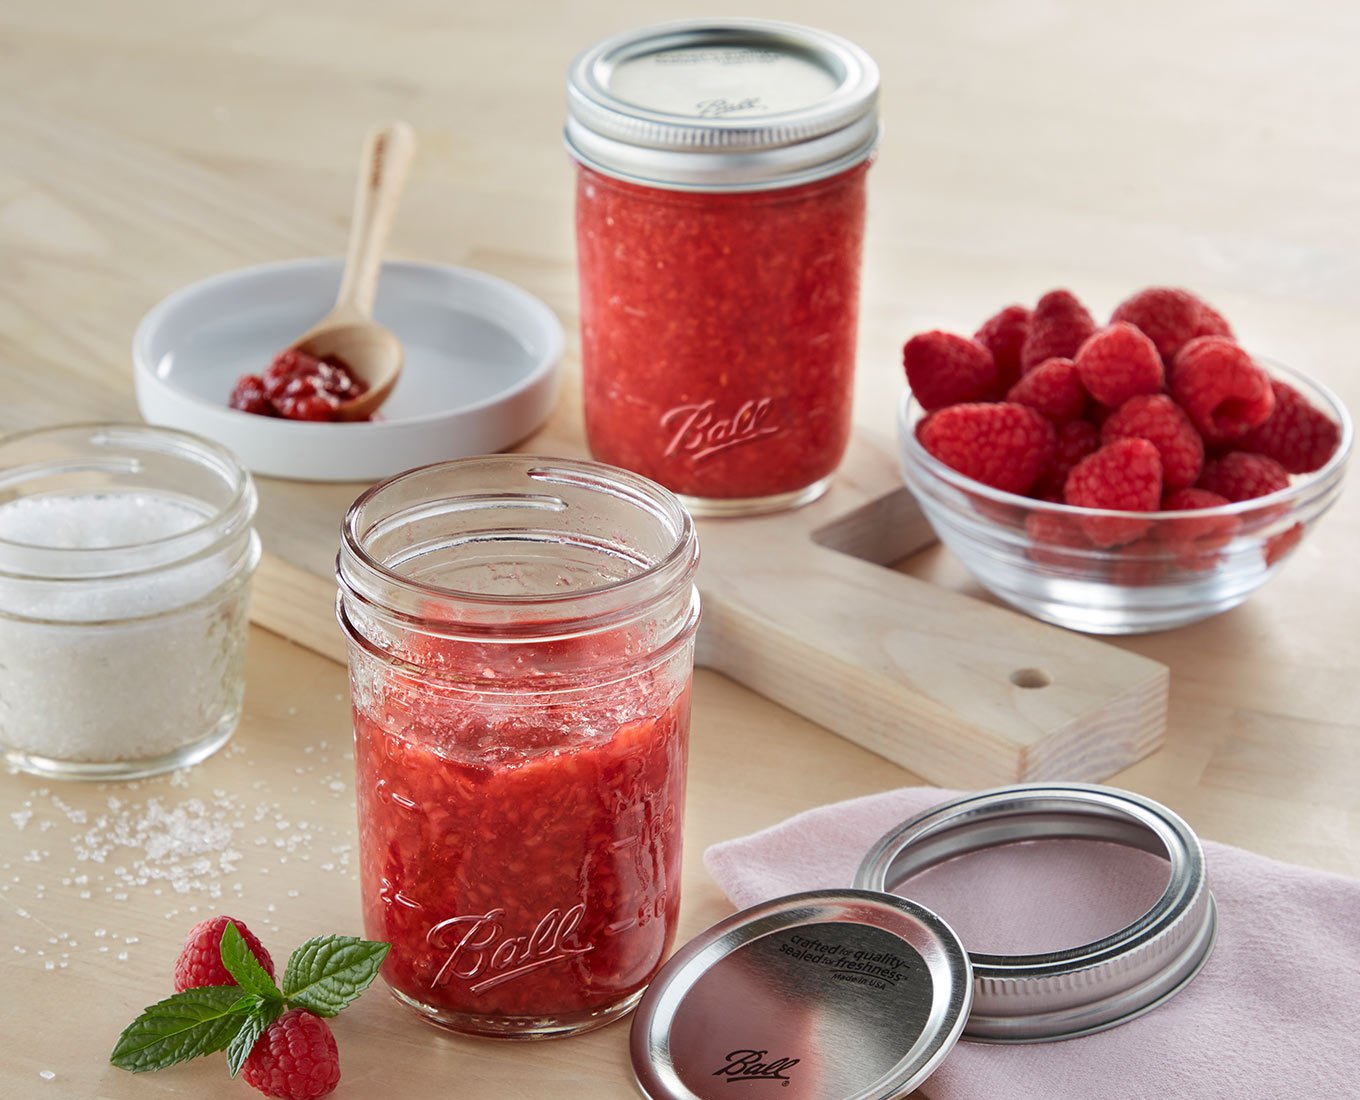 Raspberry Freezer Jam (Easy, No-Fail Recipe)